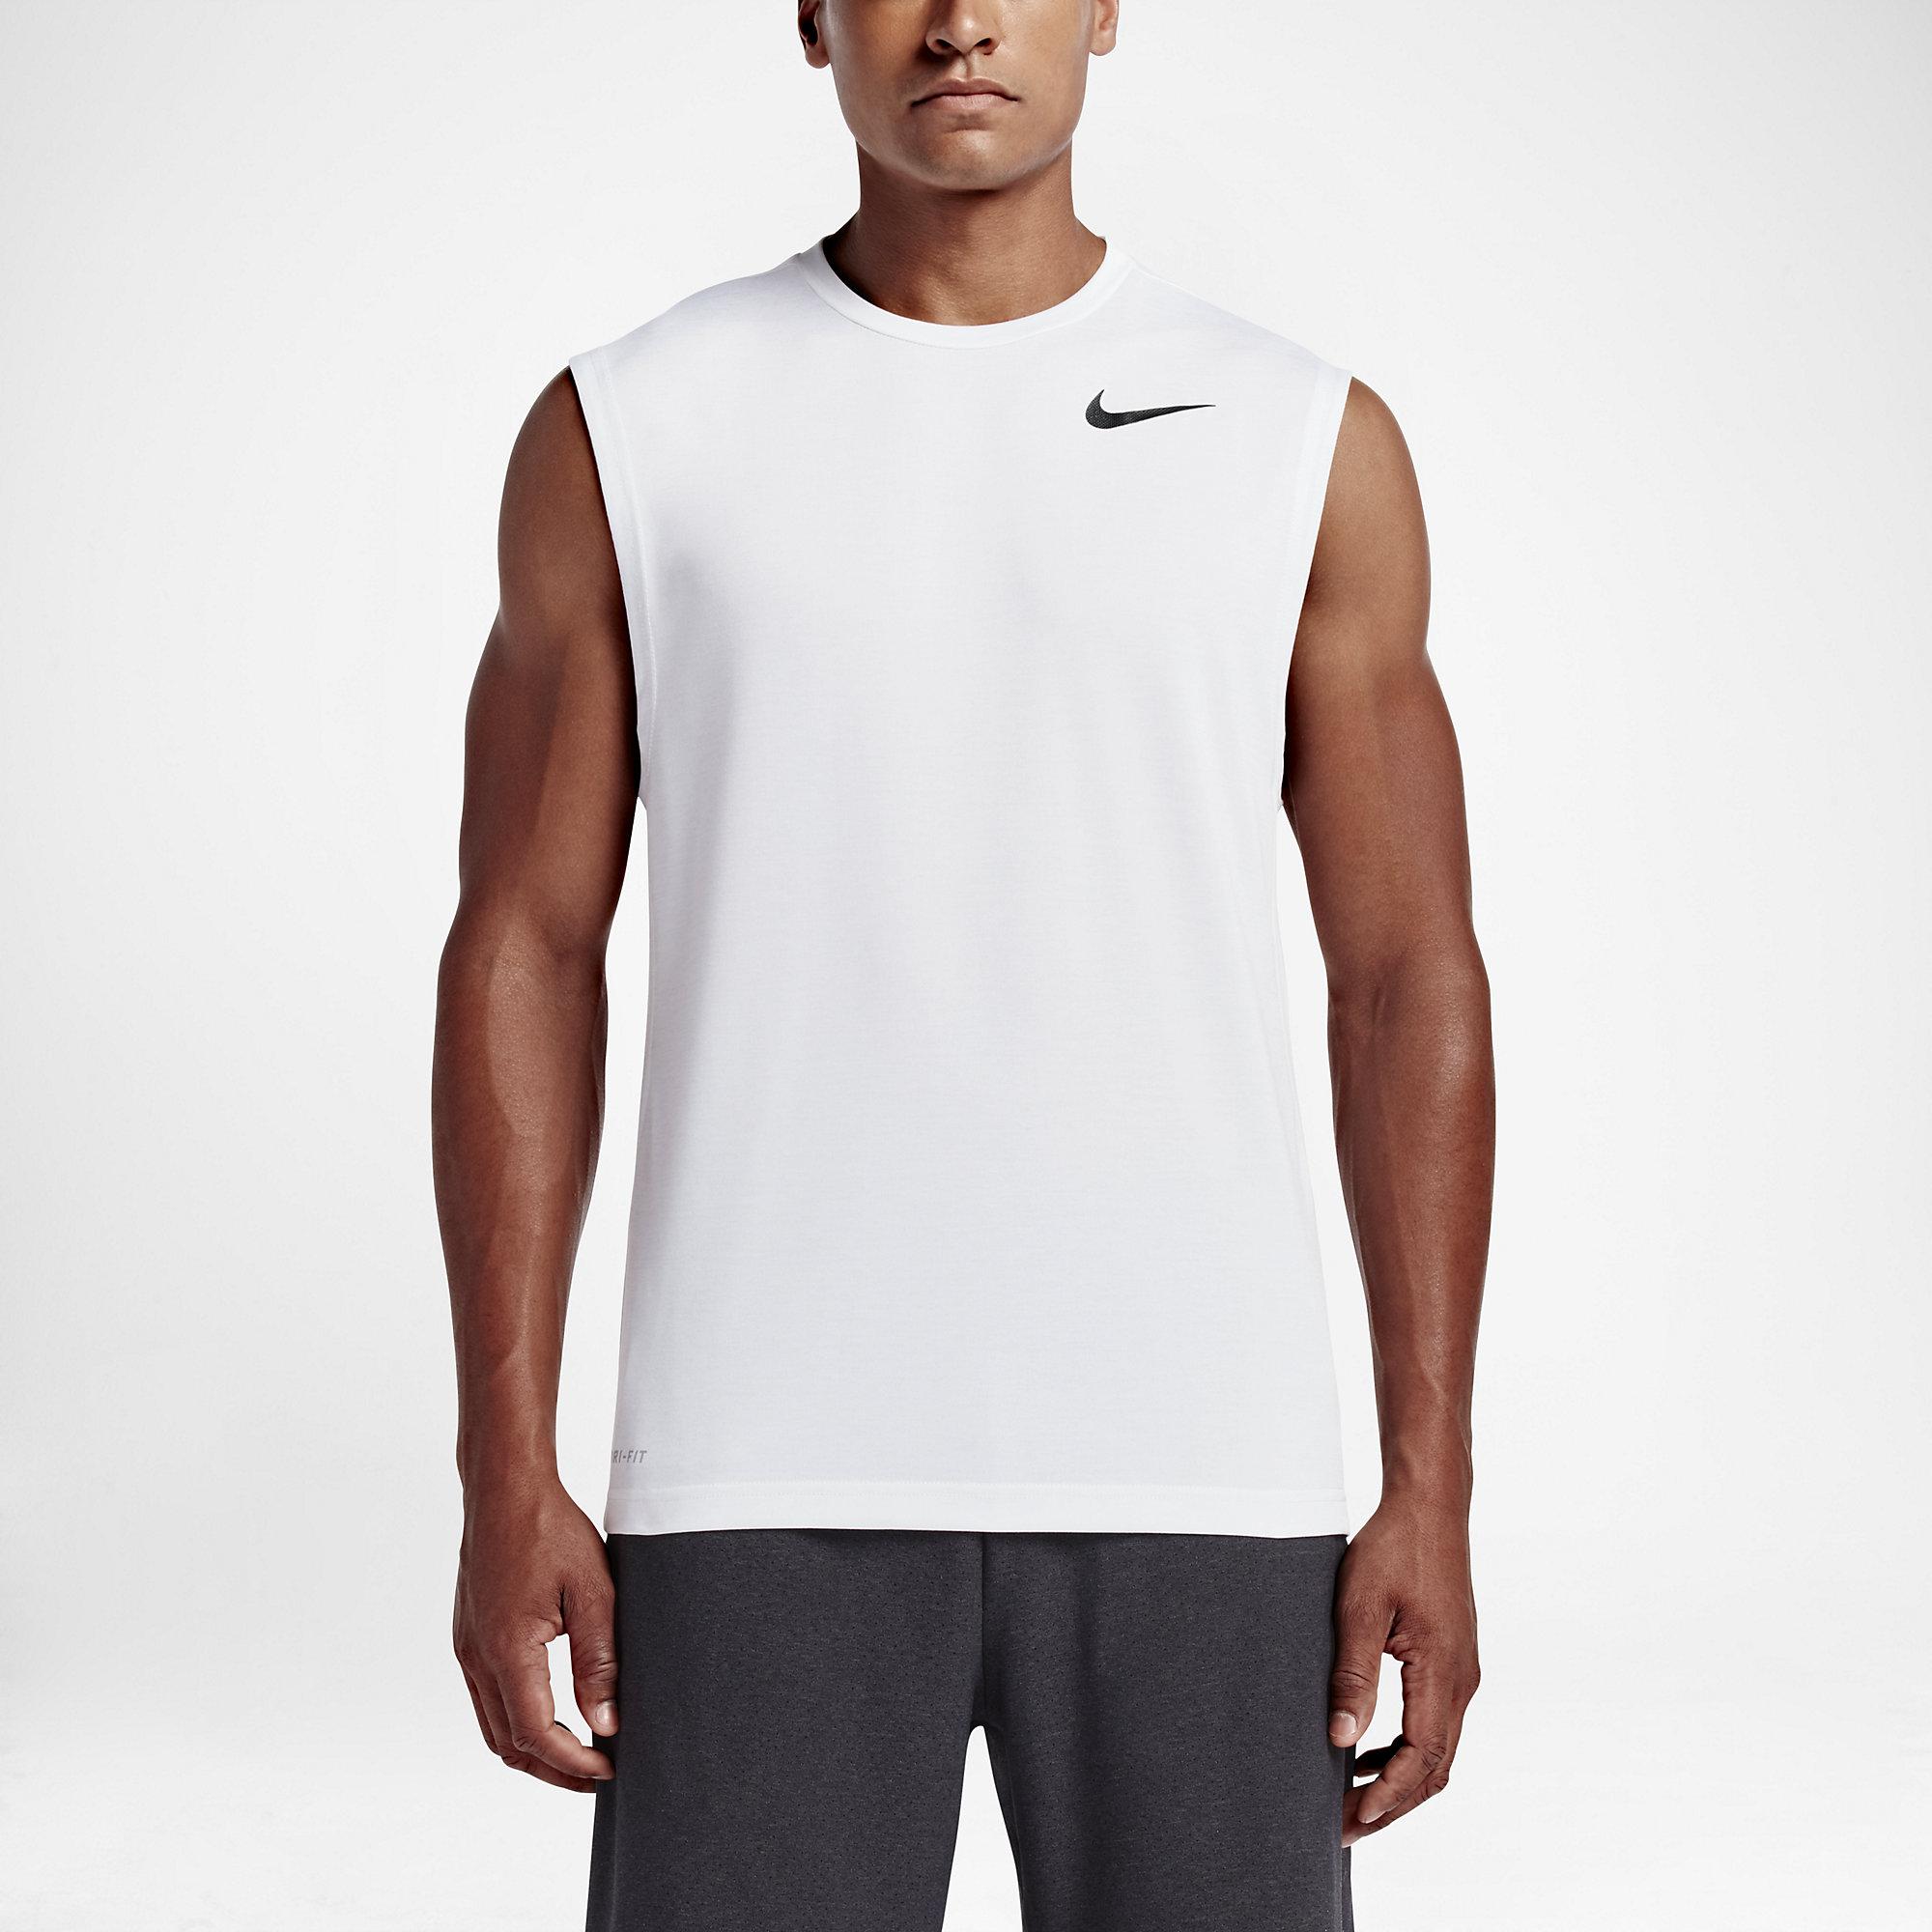 Nike Mens Dry Training Tank Top - White - Tennisnuts.com